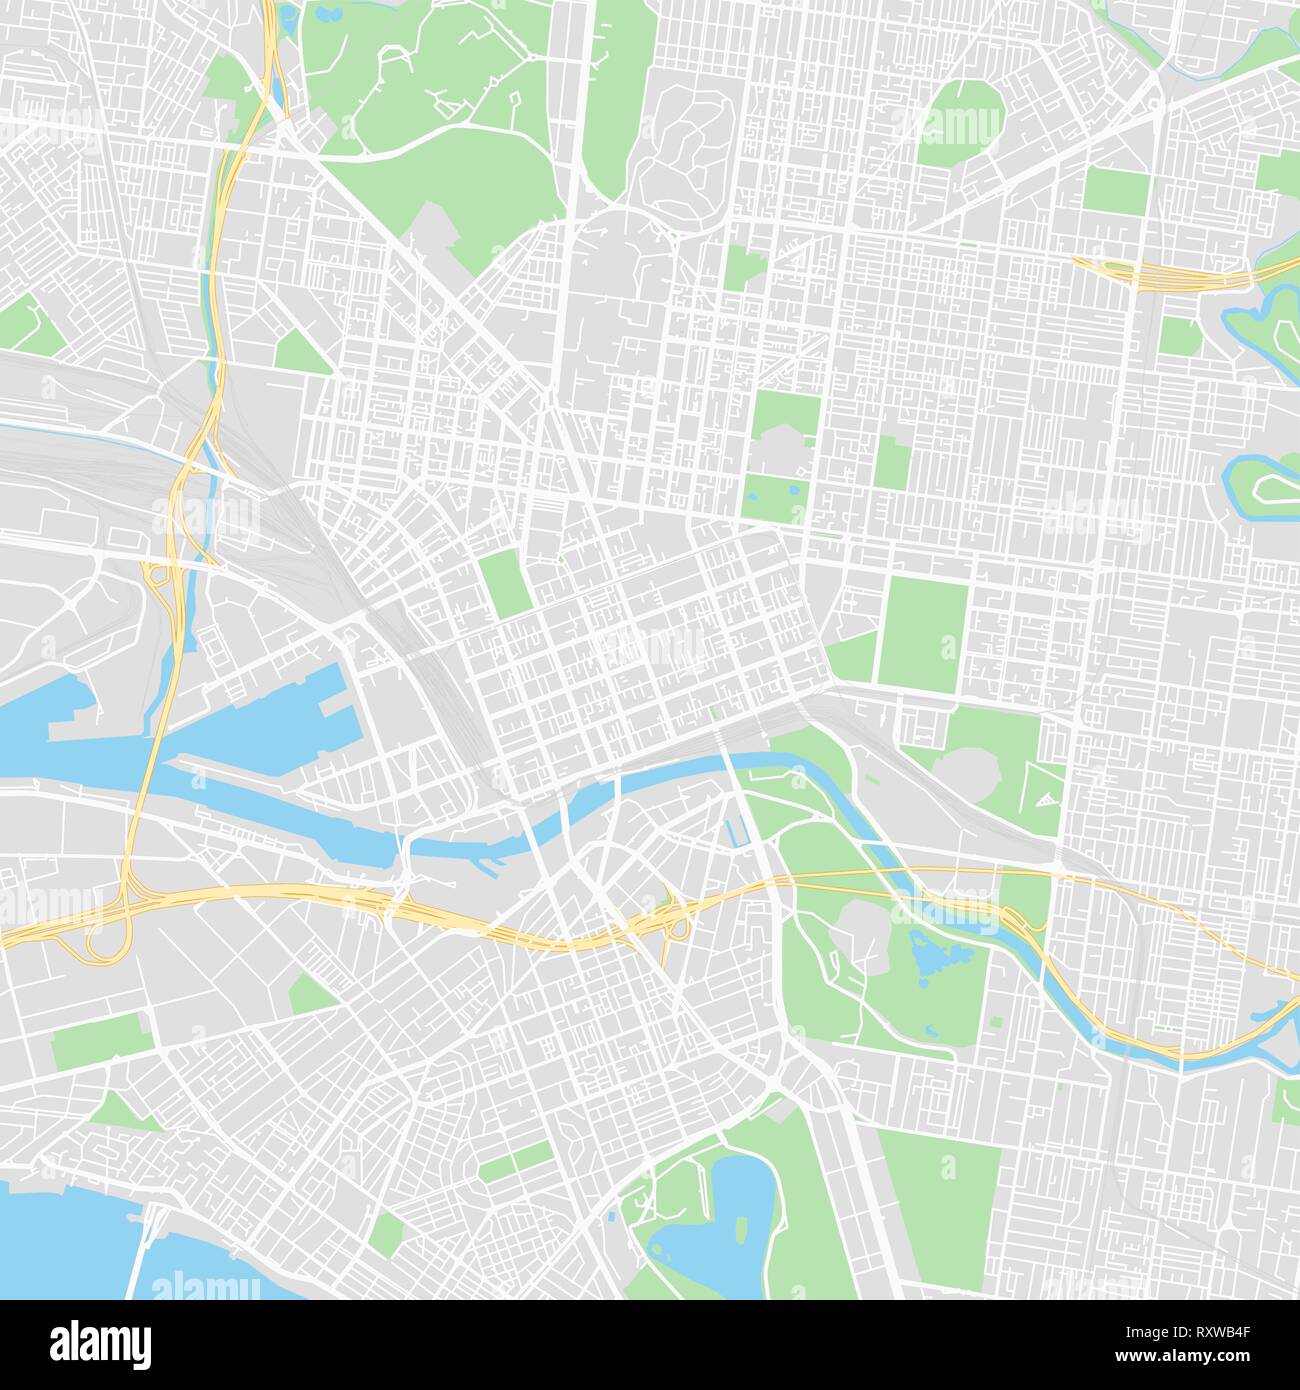 Downtown Vektor Karte von Melbourne, Australien. Diese druckbare Karte von Melbourne enthält Zeilen und klassischen farbigen Formen für die Landmasse, Parks, Wasser, Ma Stock Vektor